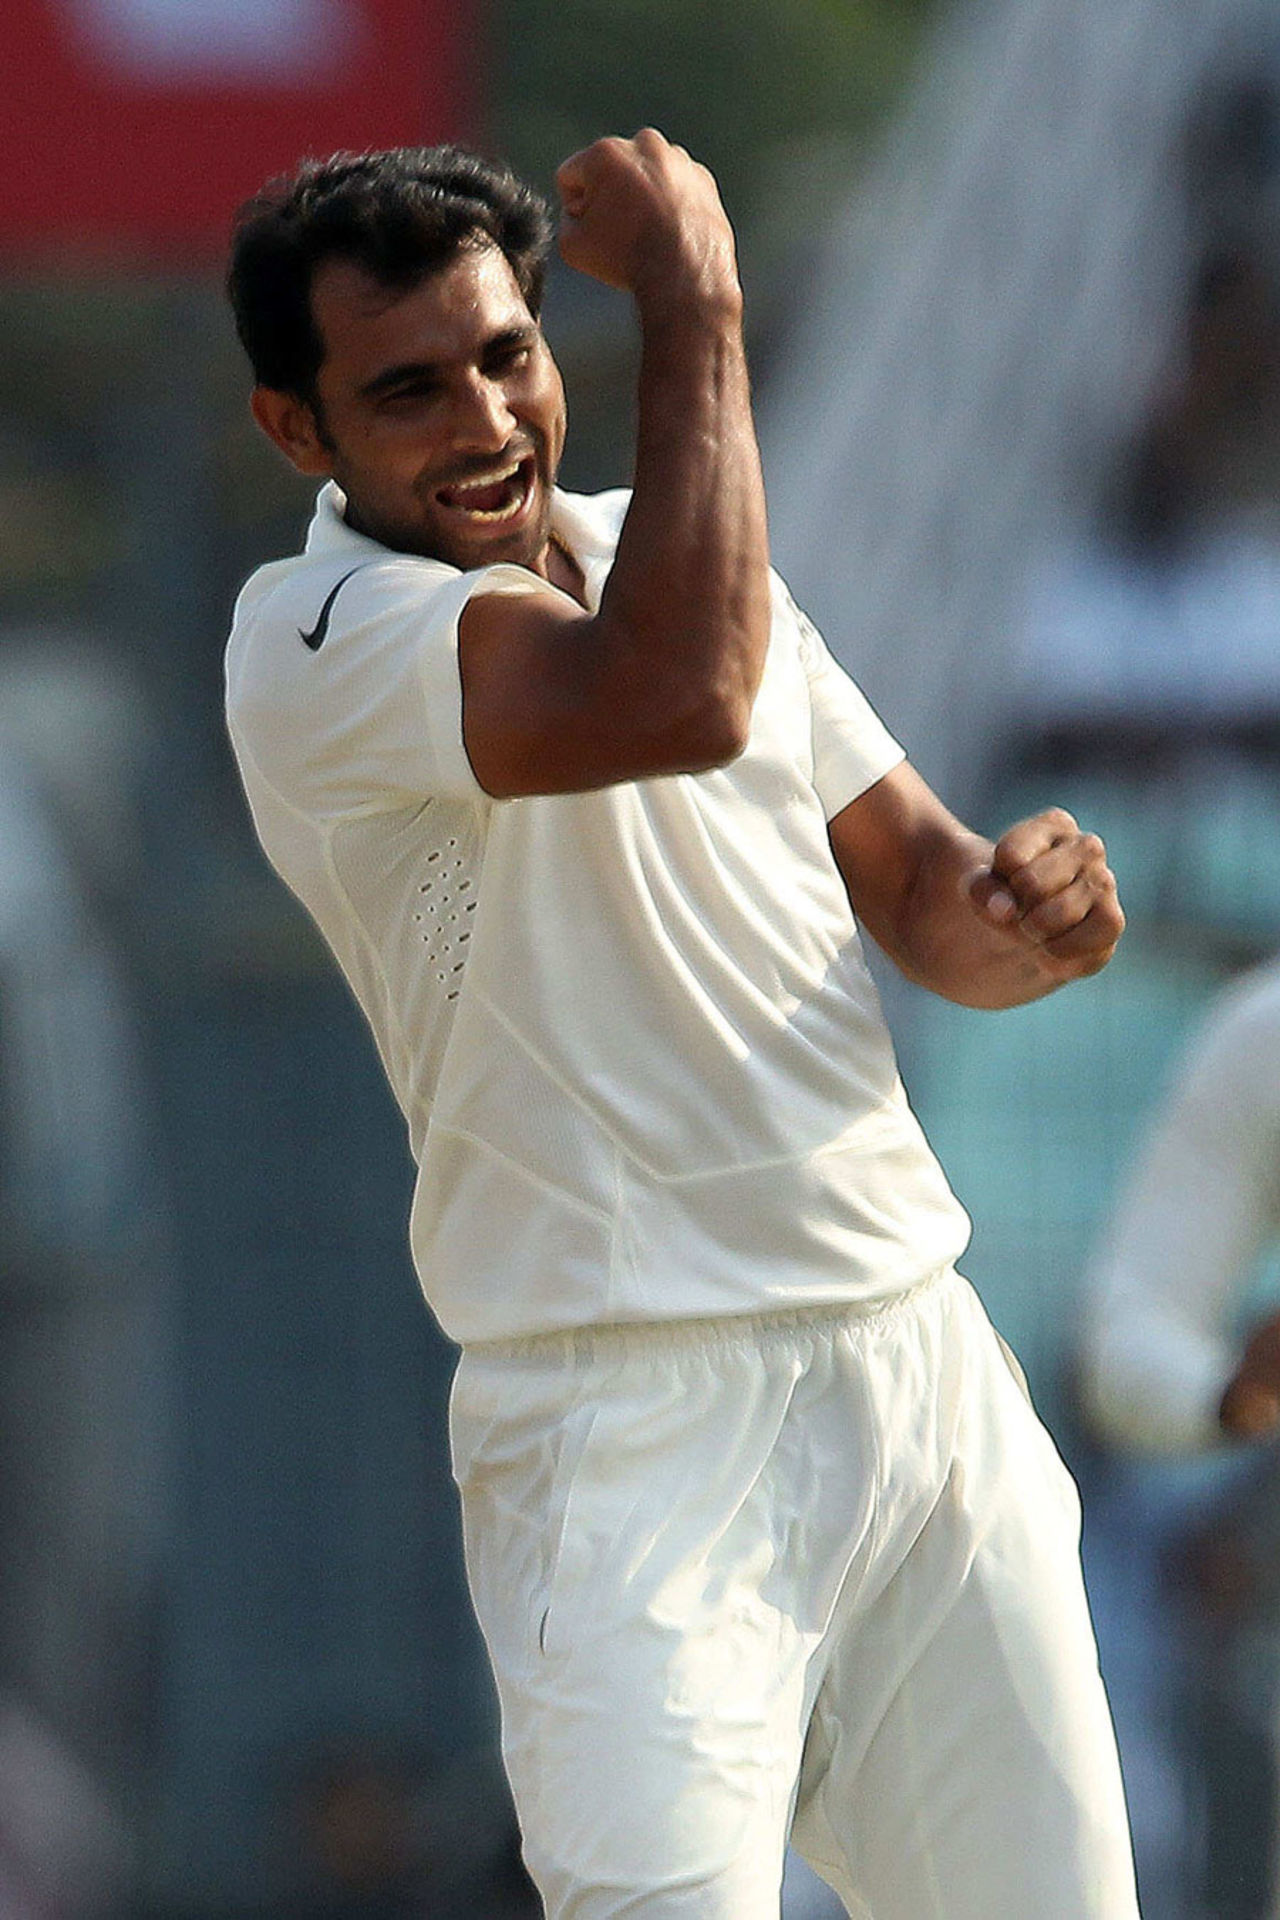 Mohammed Shami exults after dismissing Denesh Ramdin, India v West Indies, 1st Test, Kolkata, 3rd day, November 8, 2013